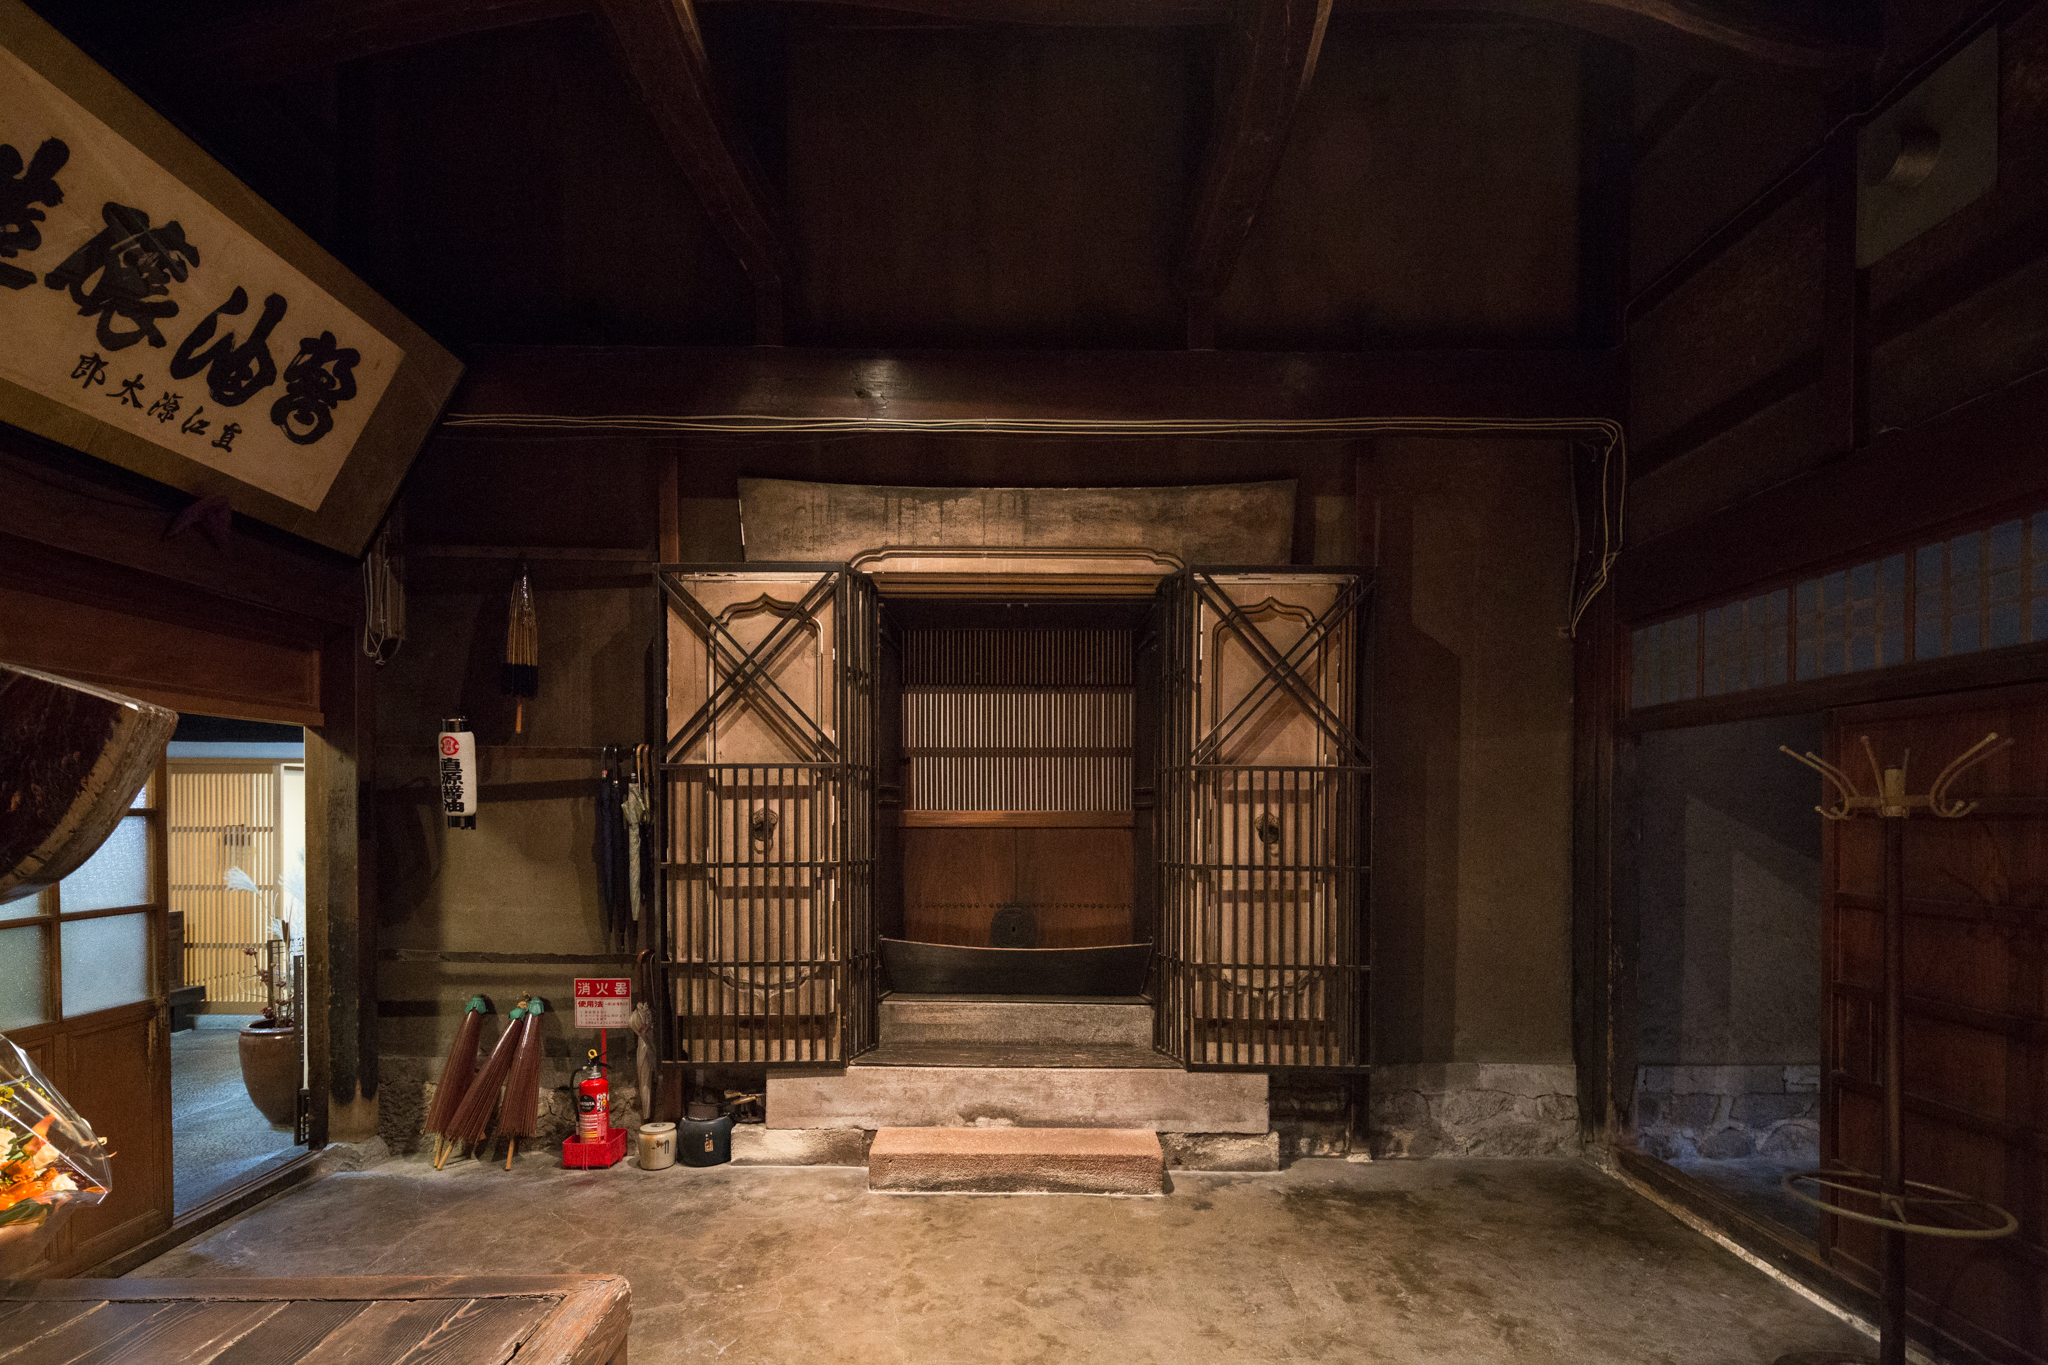 interior-doorway-kanazawa-kura-research-japan-zachary-newton.jpg